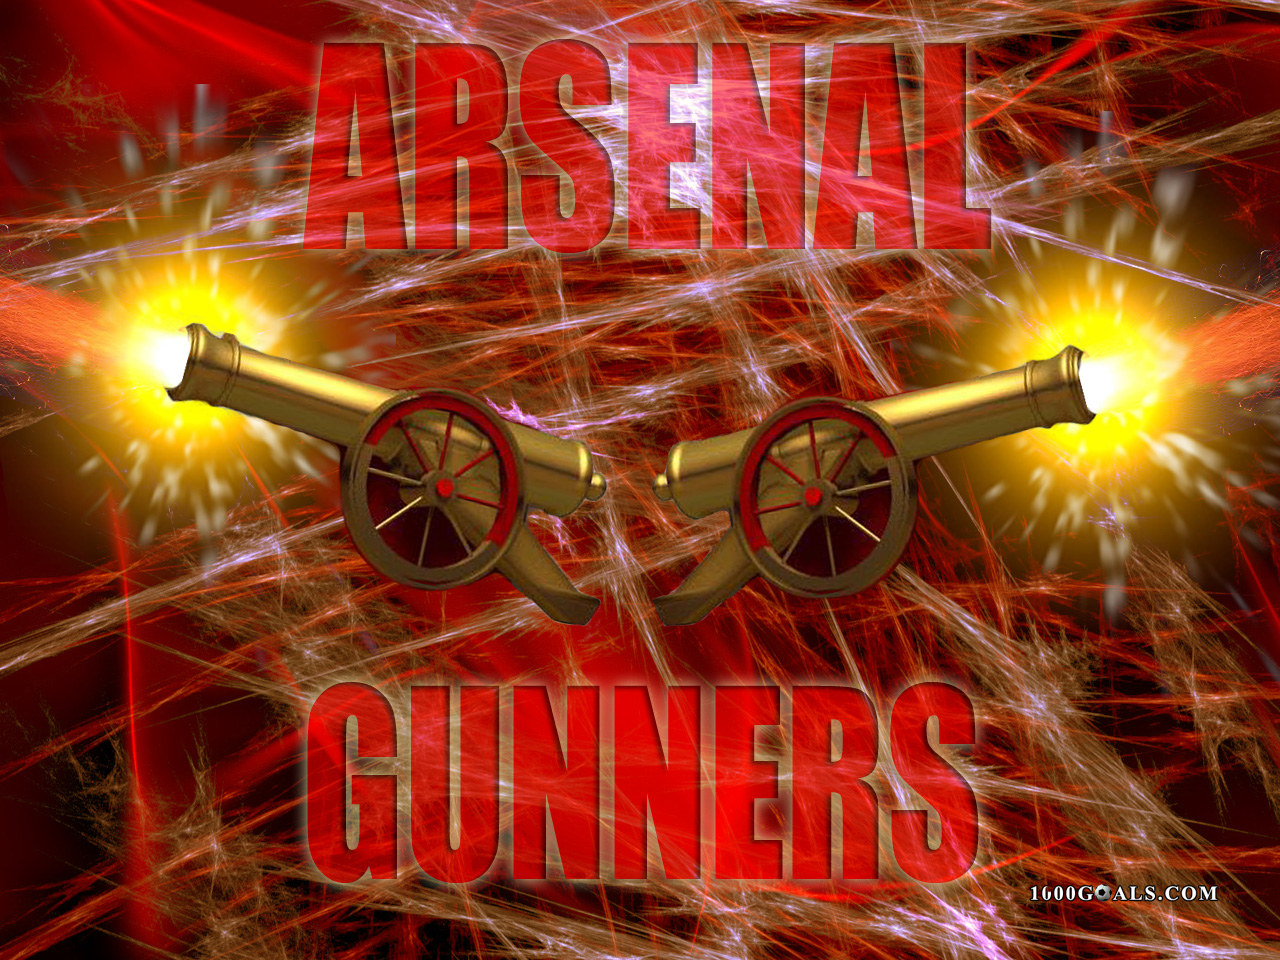 Arsenal FC wallpaper | Football - 1000 Goals